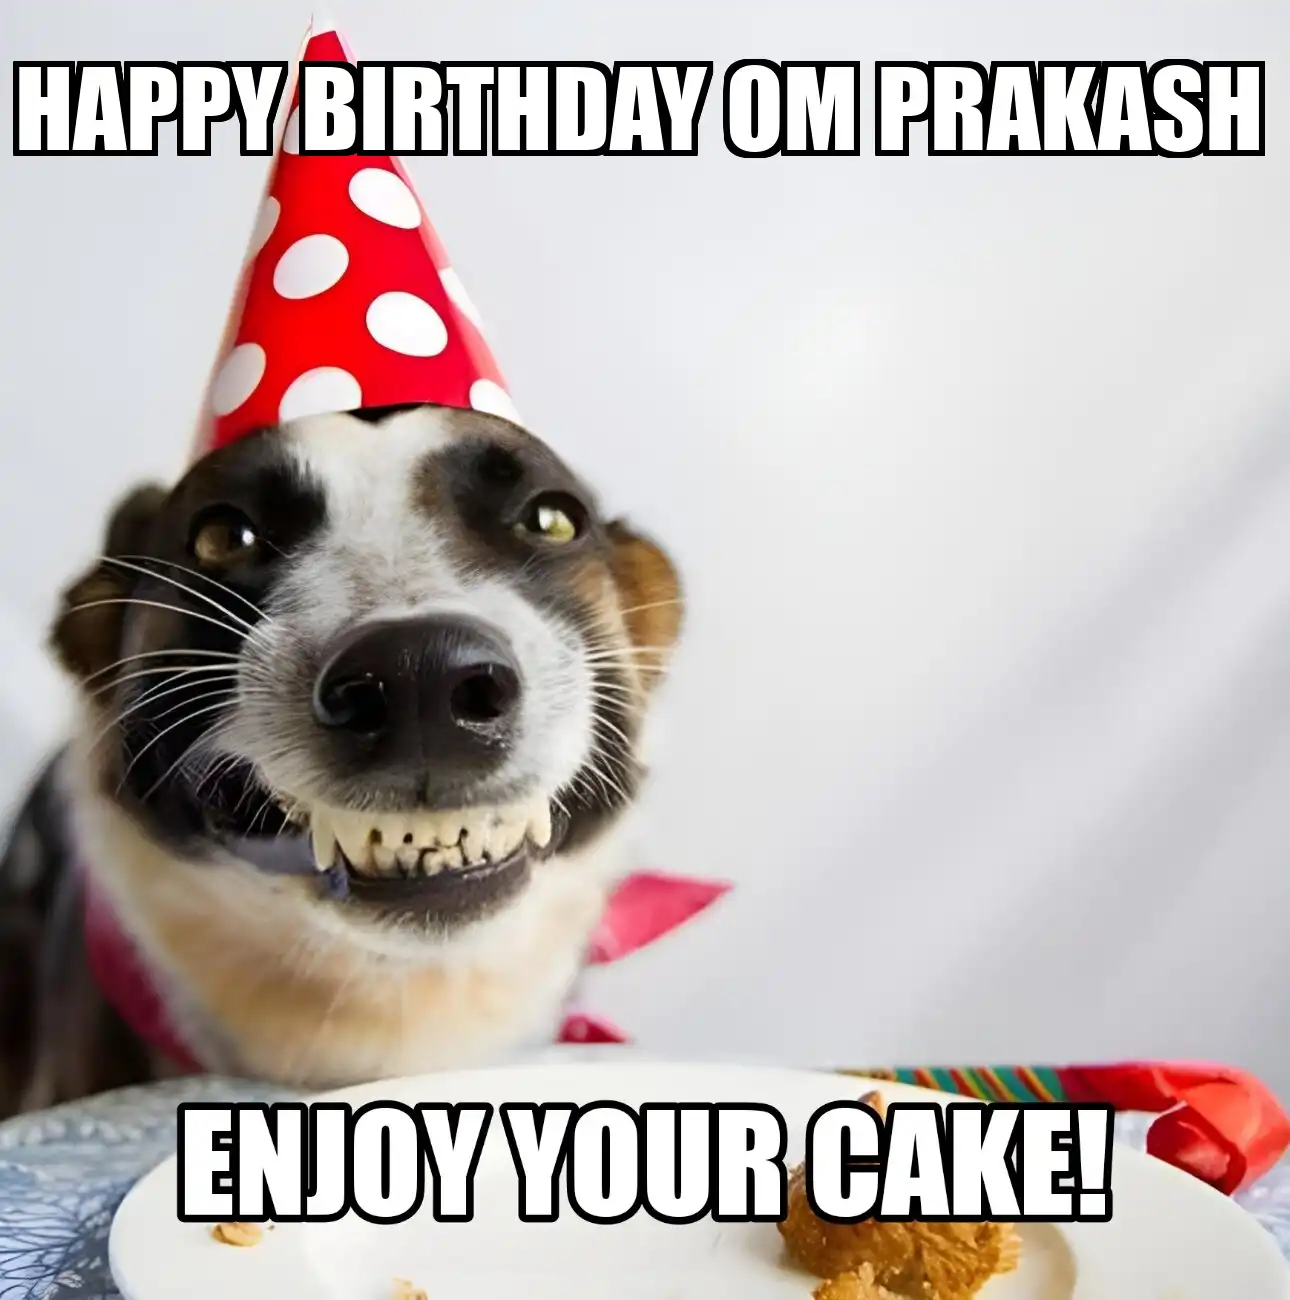 Happy Birthday Om Prakash Enjoy Your Cake Dog Meme